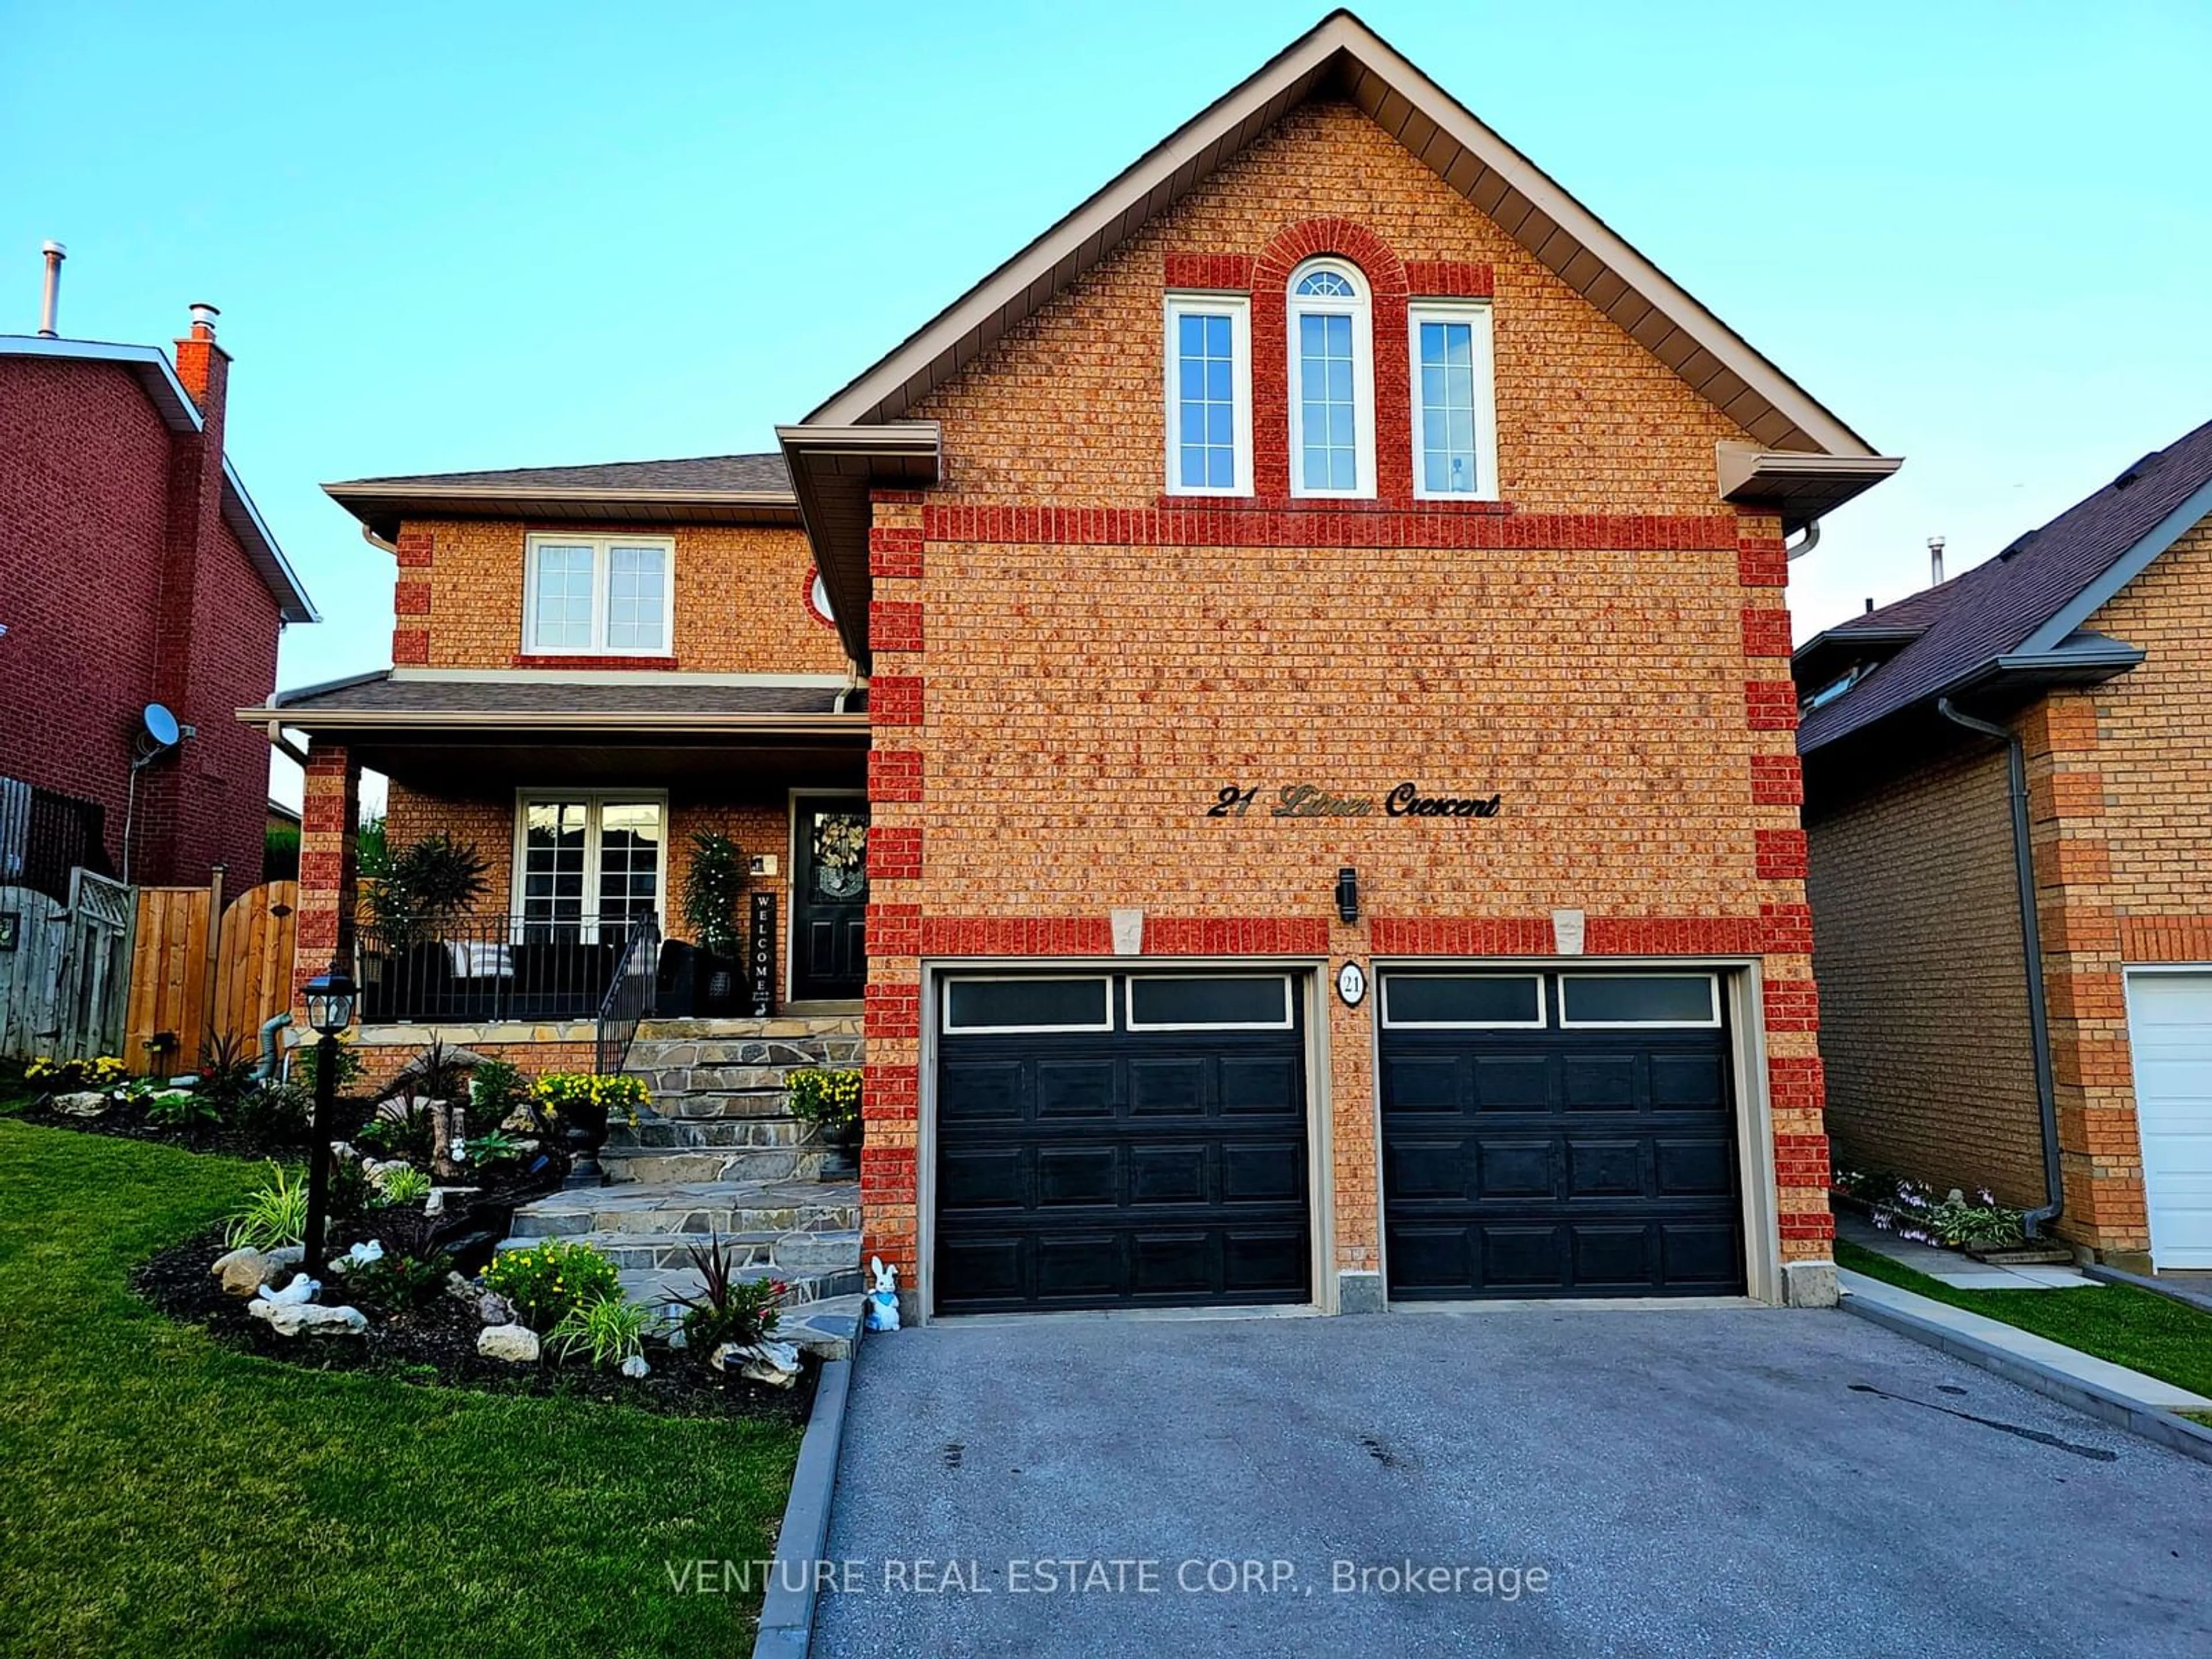 Home with brick exterior material for 21 Litner Cres, Georgina Ontario L4R 3V1